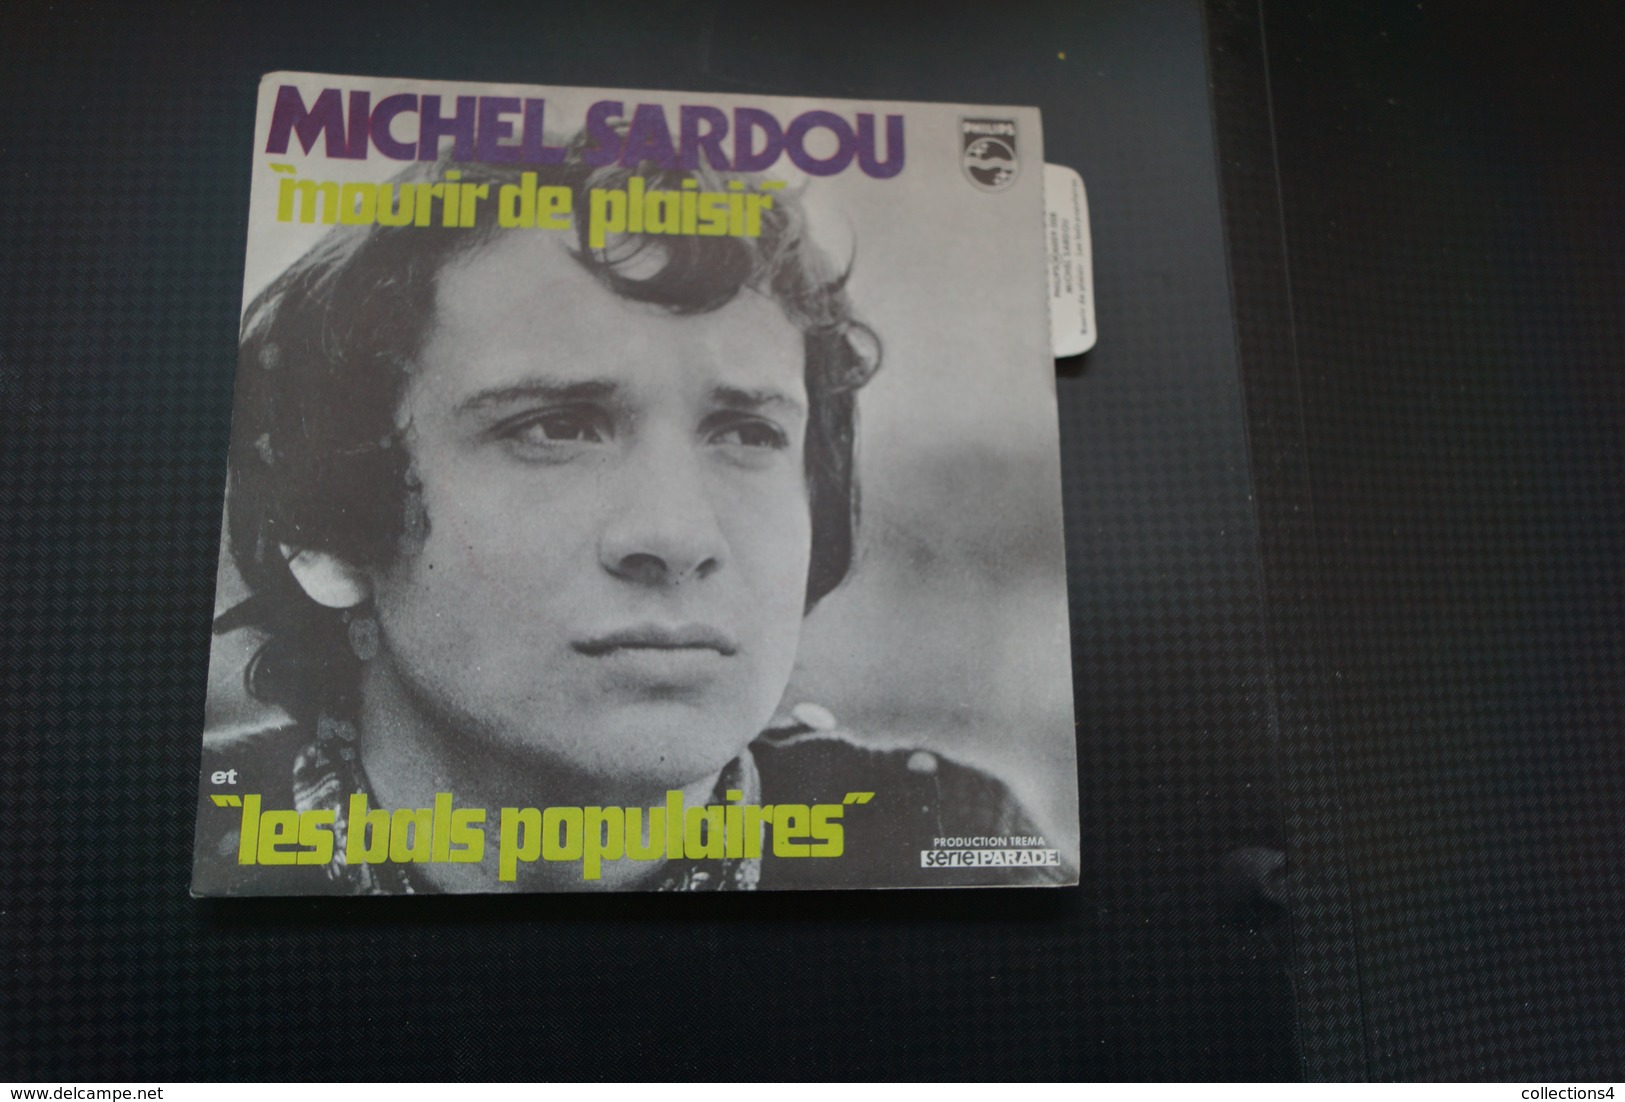 MICHEL SARDOU MOURIR DE PLAISIR SP  DE 1970 / LANGUETTE - Other - French Music